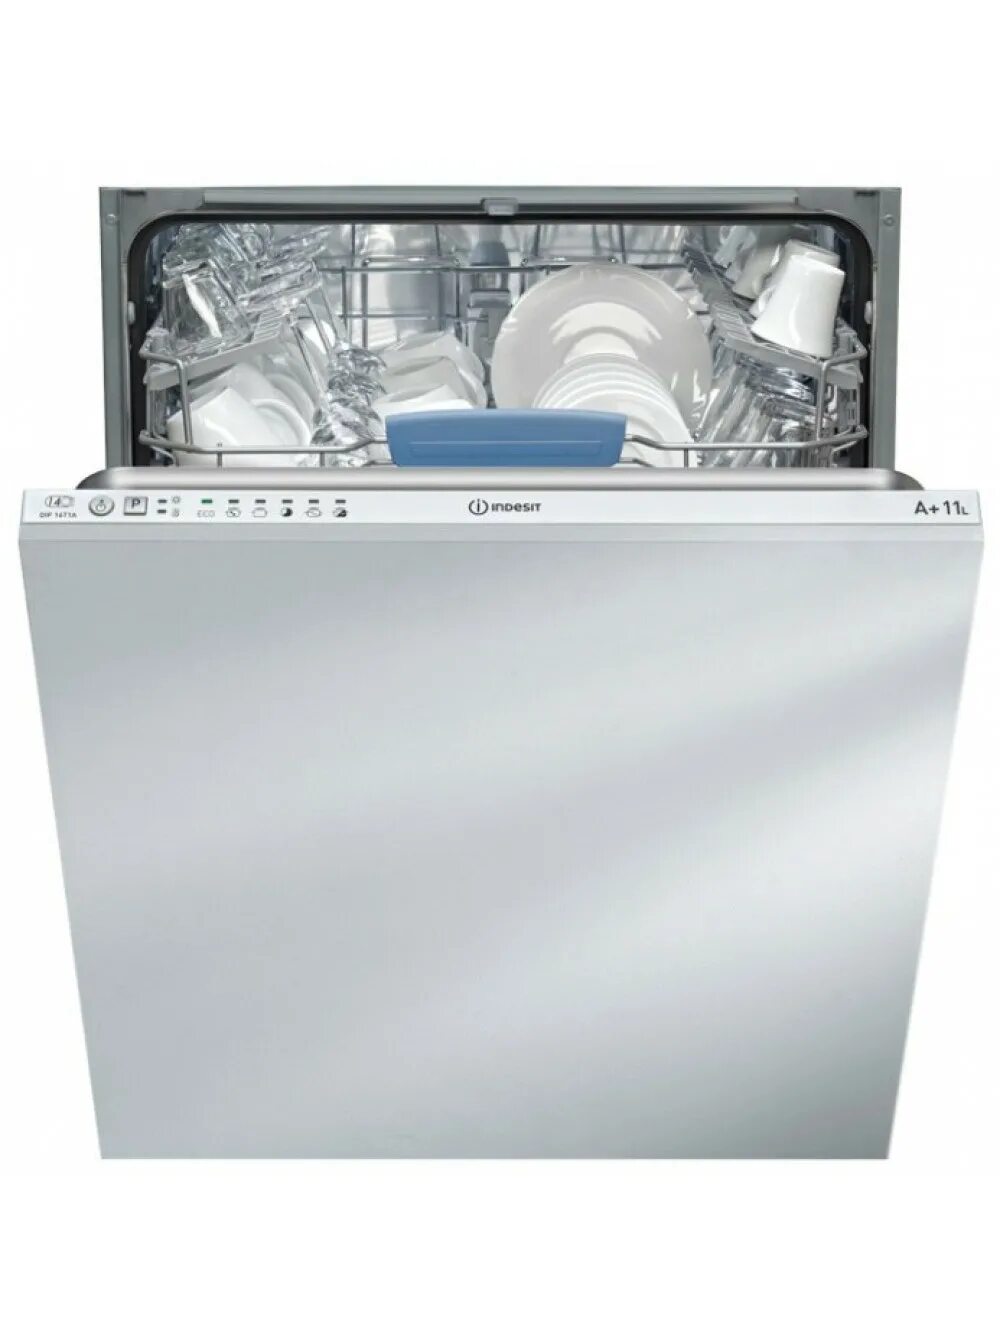 Купить посудомоечную машину в интернет магазине. Посудомоечная машина Индезит 60 см встраиваемая.